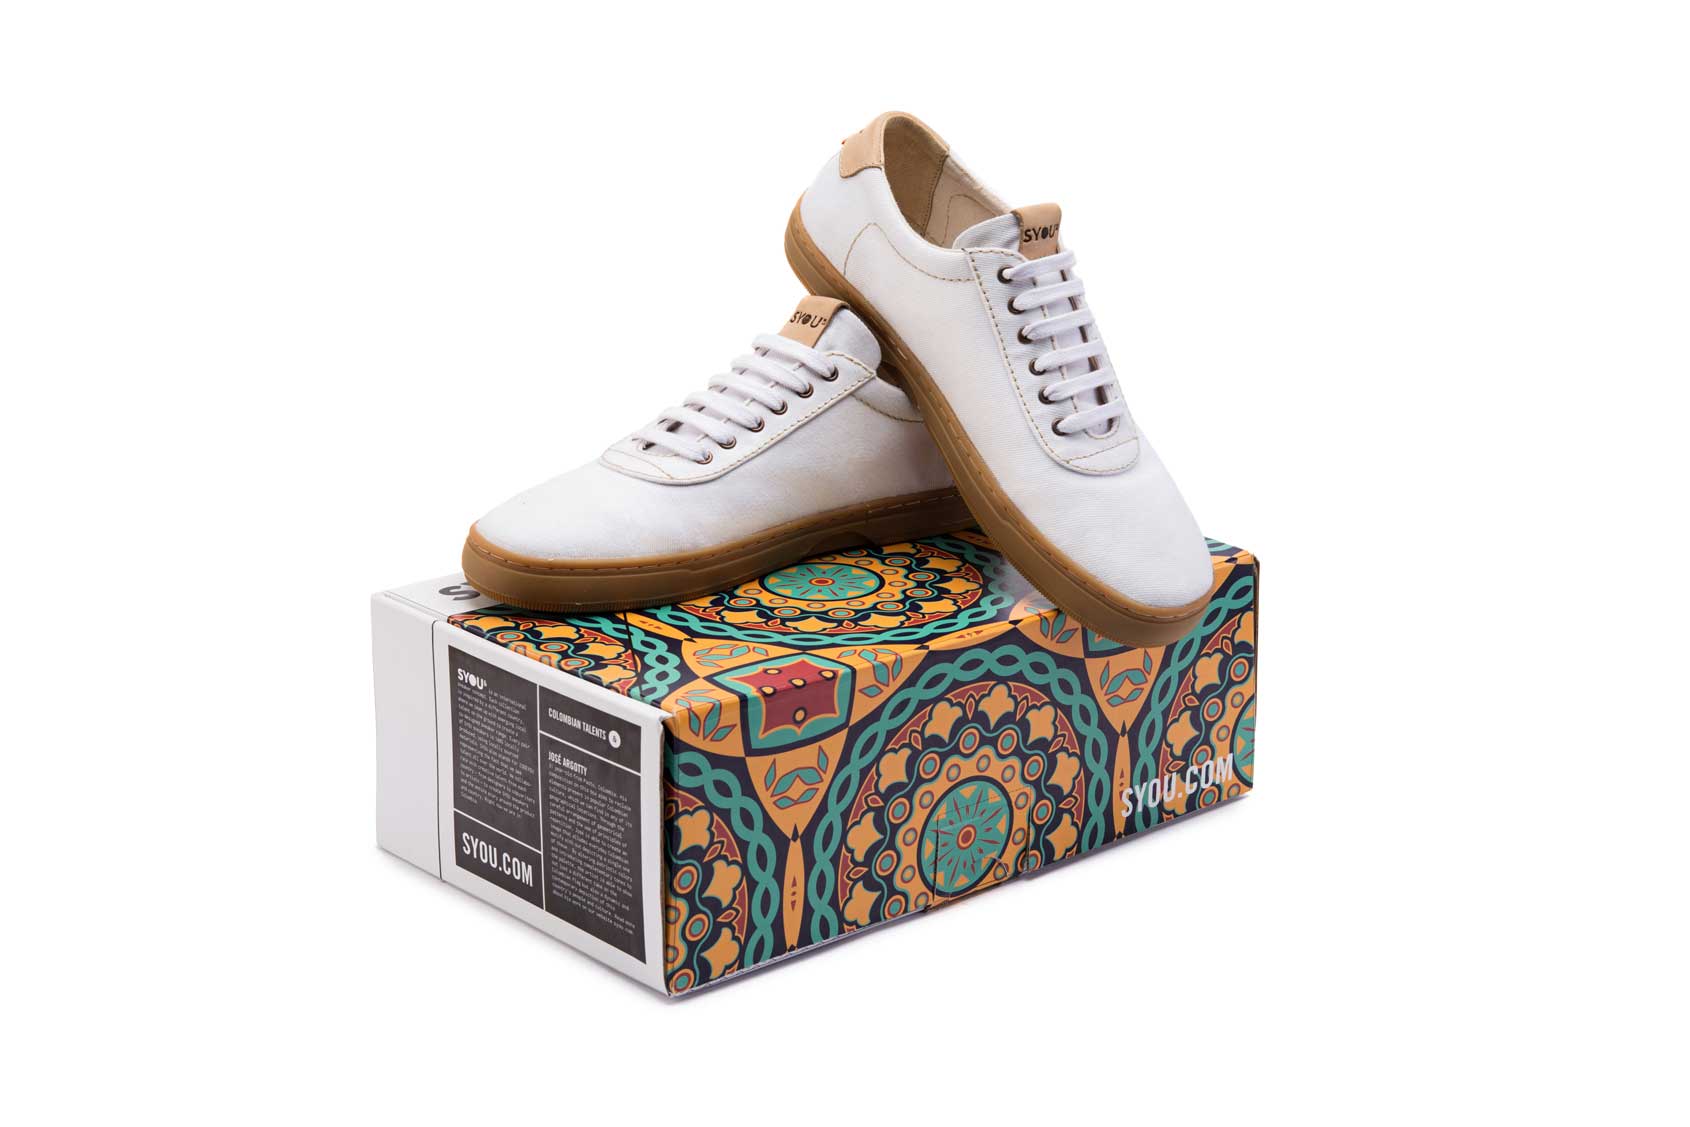 Co2 white syou shoe box